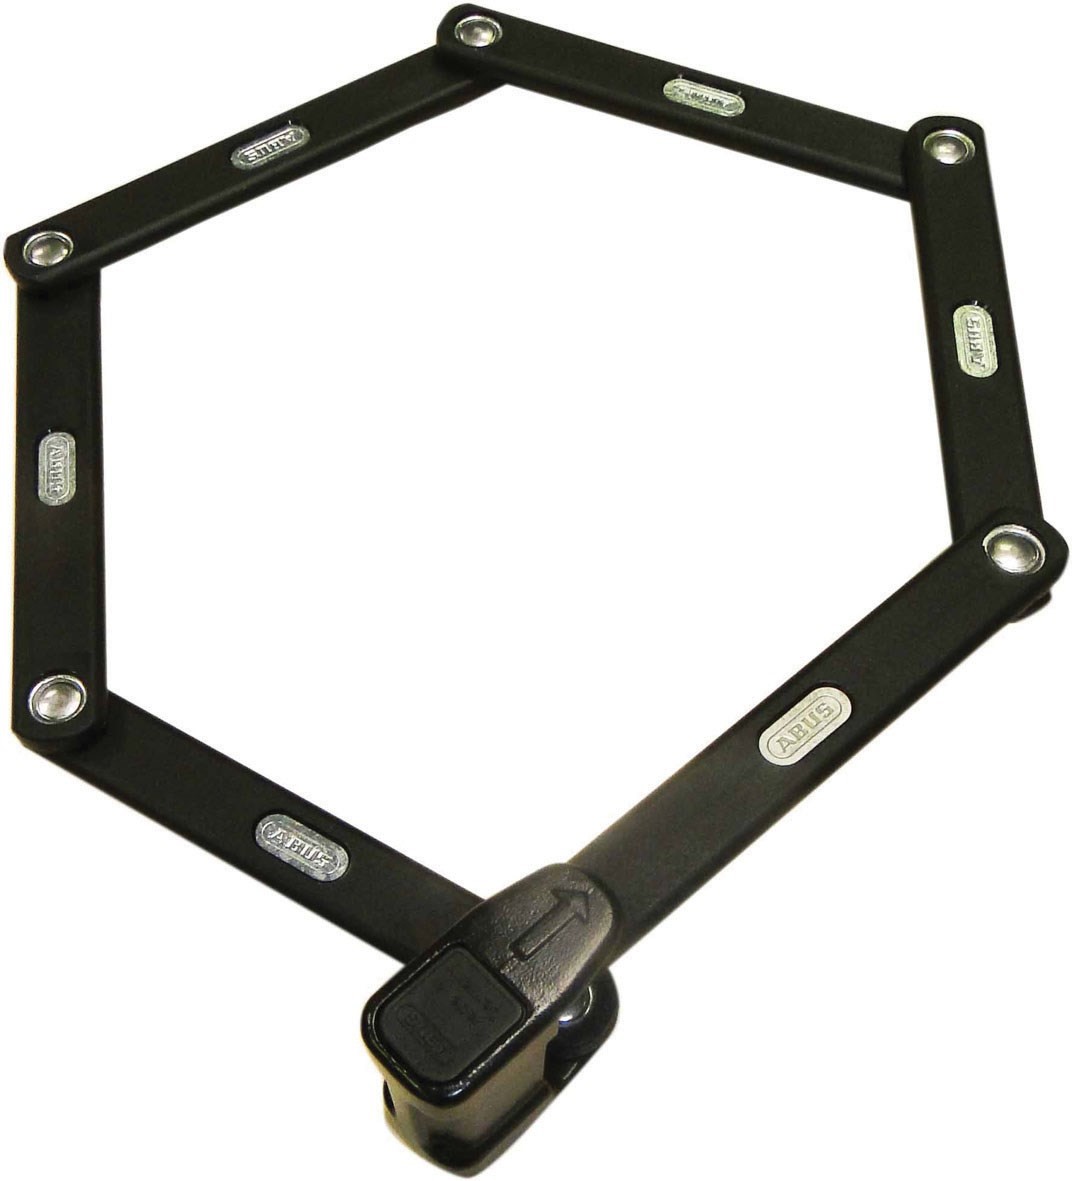 Abus Bordo 5900 Folding Lock product image